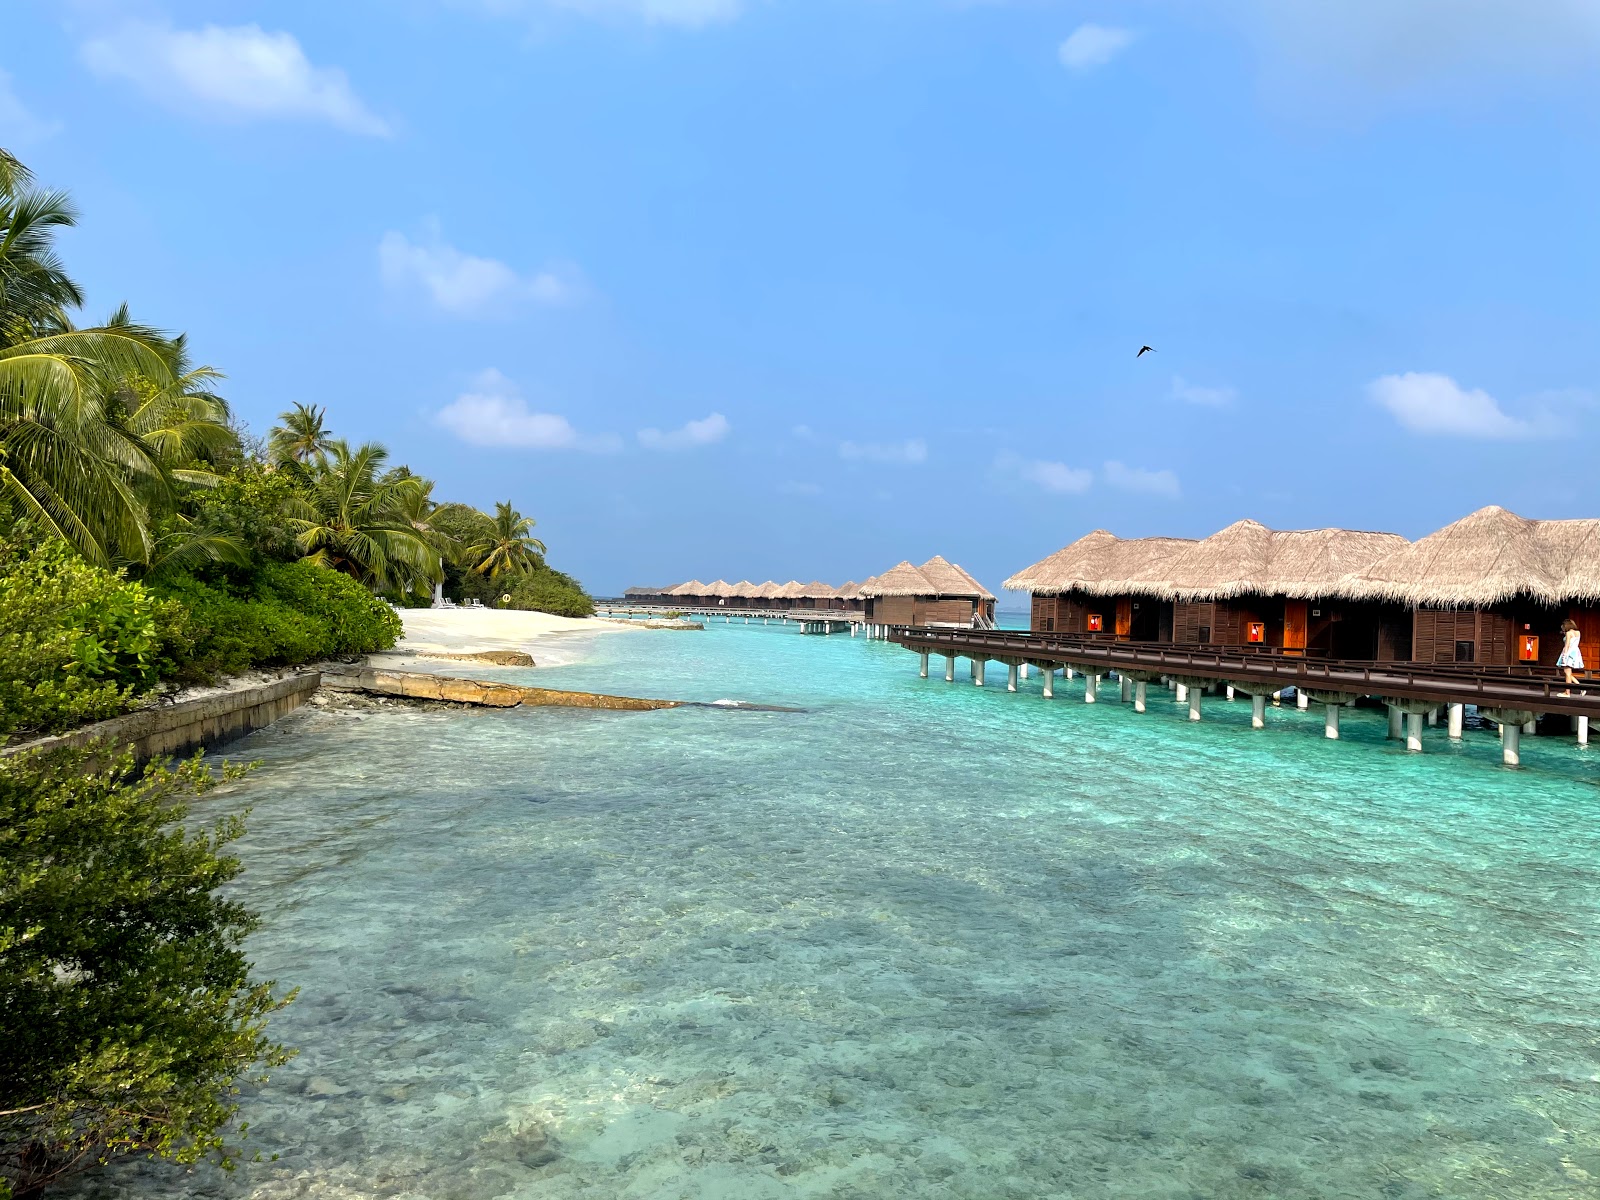 Photo de Sheraton Resort Island - endroit populaire parmi les connaisseurs de la détente